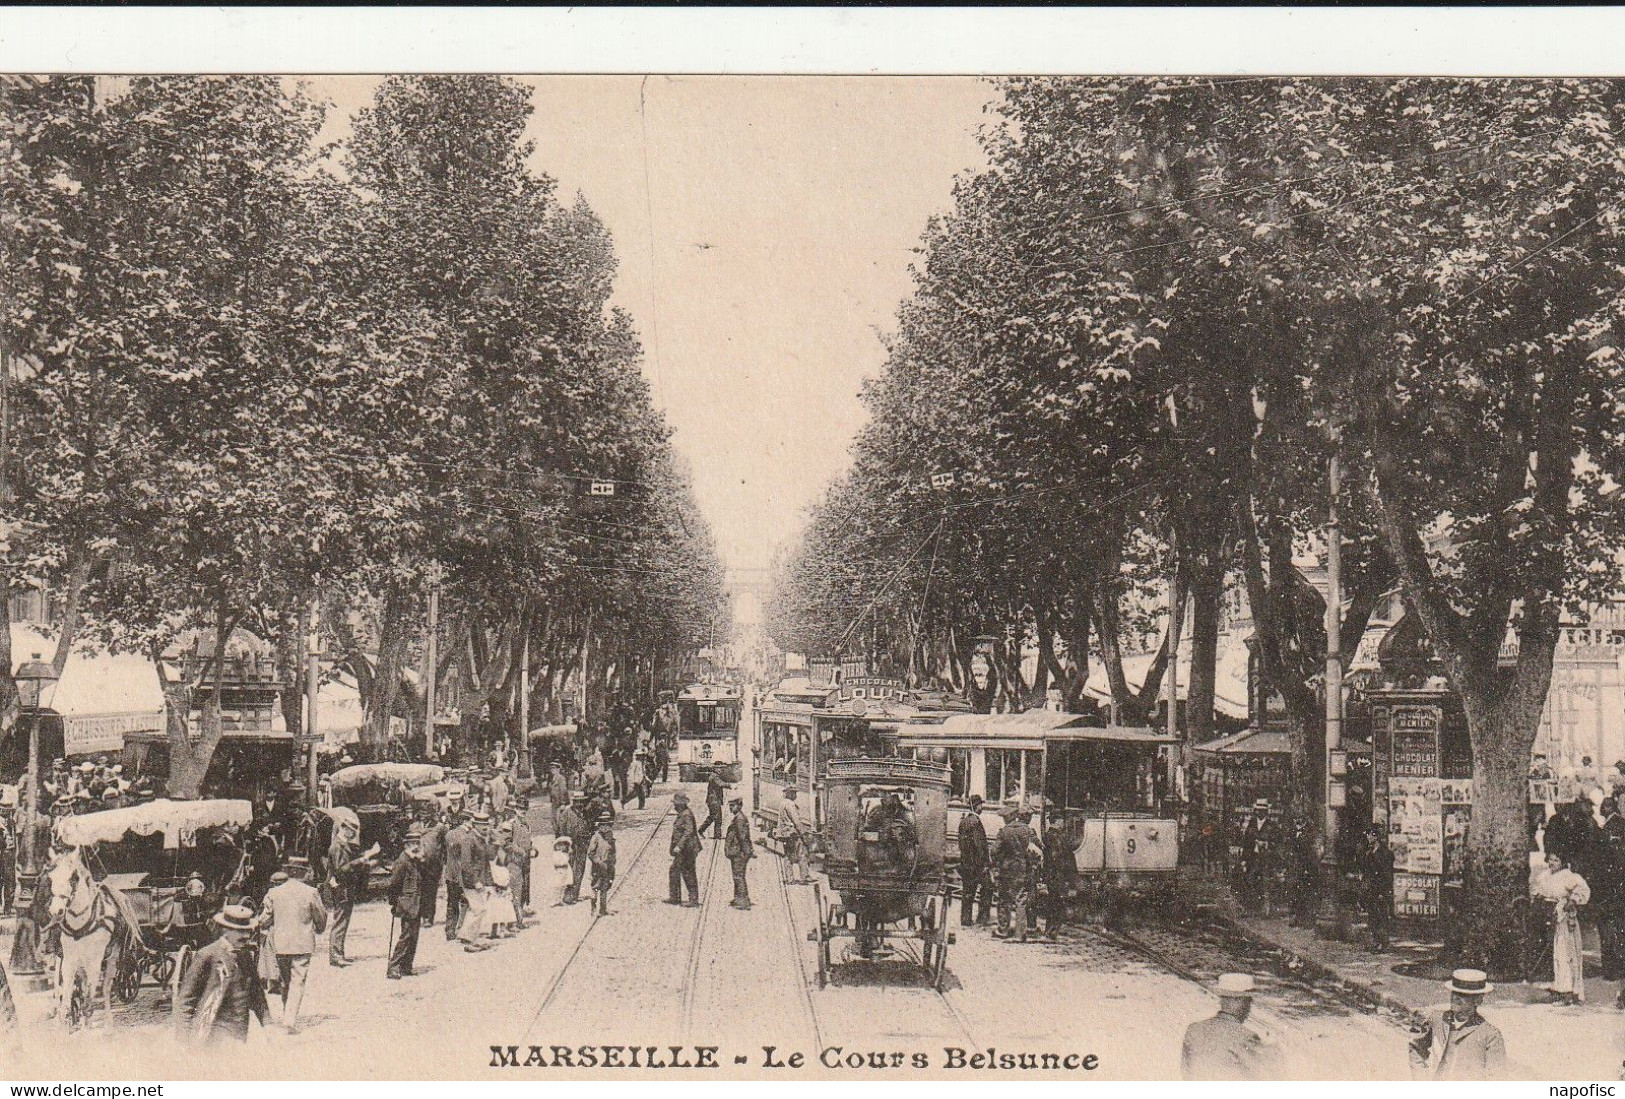 13-Marseille Le Cours Belsunce - Canebière, Centro